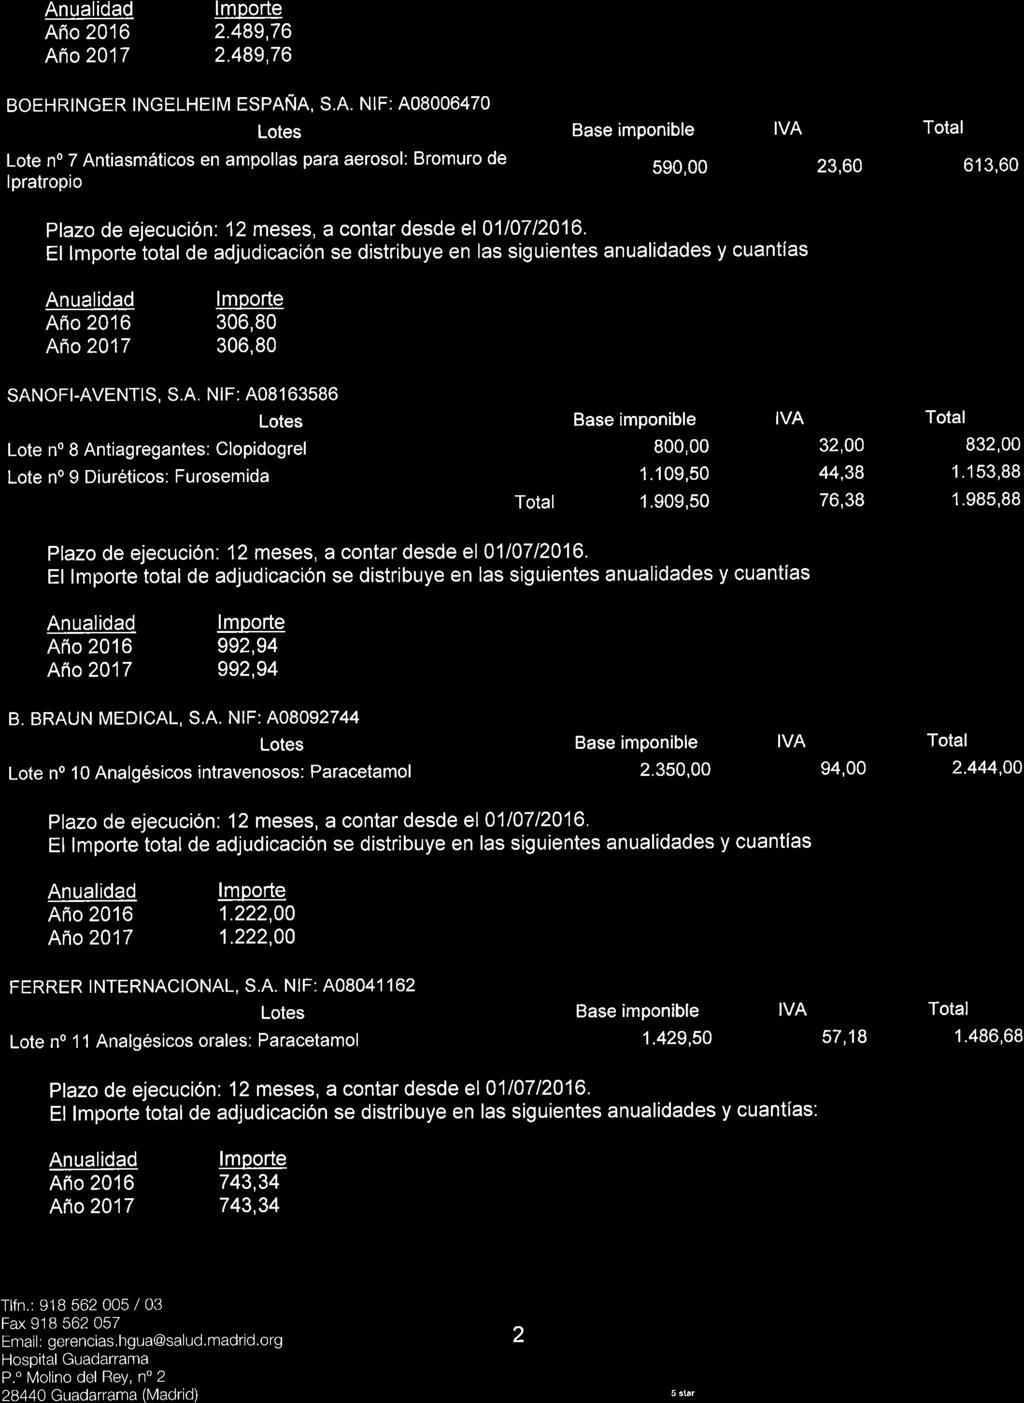 SaludMadrid Comunidad de Madrid Año 2016 2.489,76 Año 2017 2.489,76 BOEHRINGER INGELHEIM ESPAÑA, S.A. NIF: A08006470 Lote n 7 Antiasmáticos en ampollas para aerosol: Bromuro de Ipratropio Año 2016 306,80 Año 2017 306,80 SANOFI-AVENTIS, S.